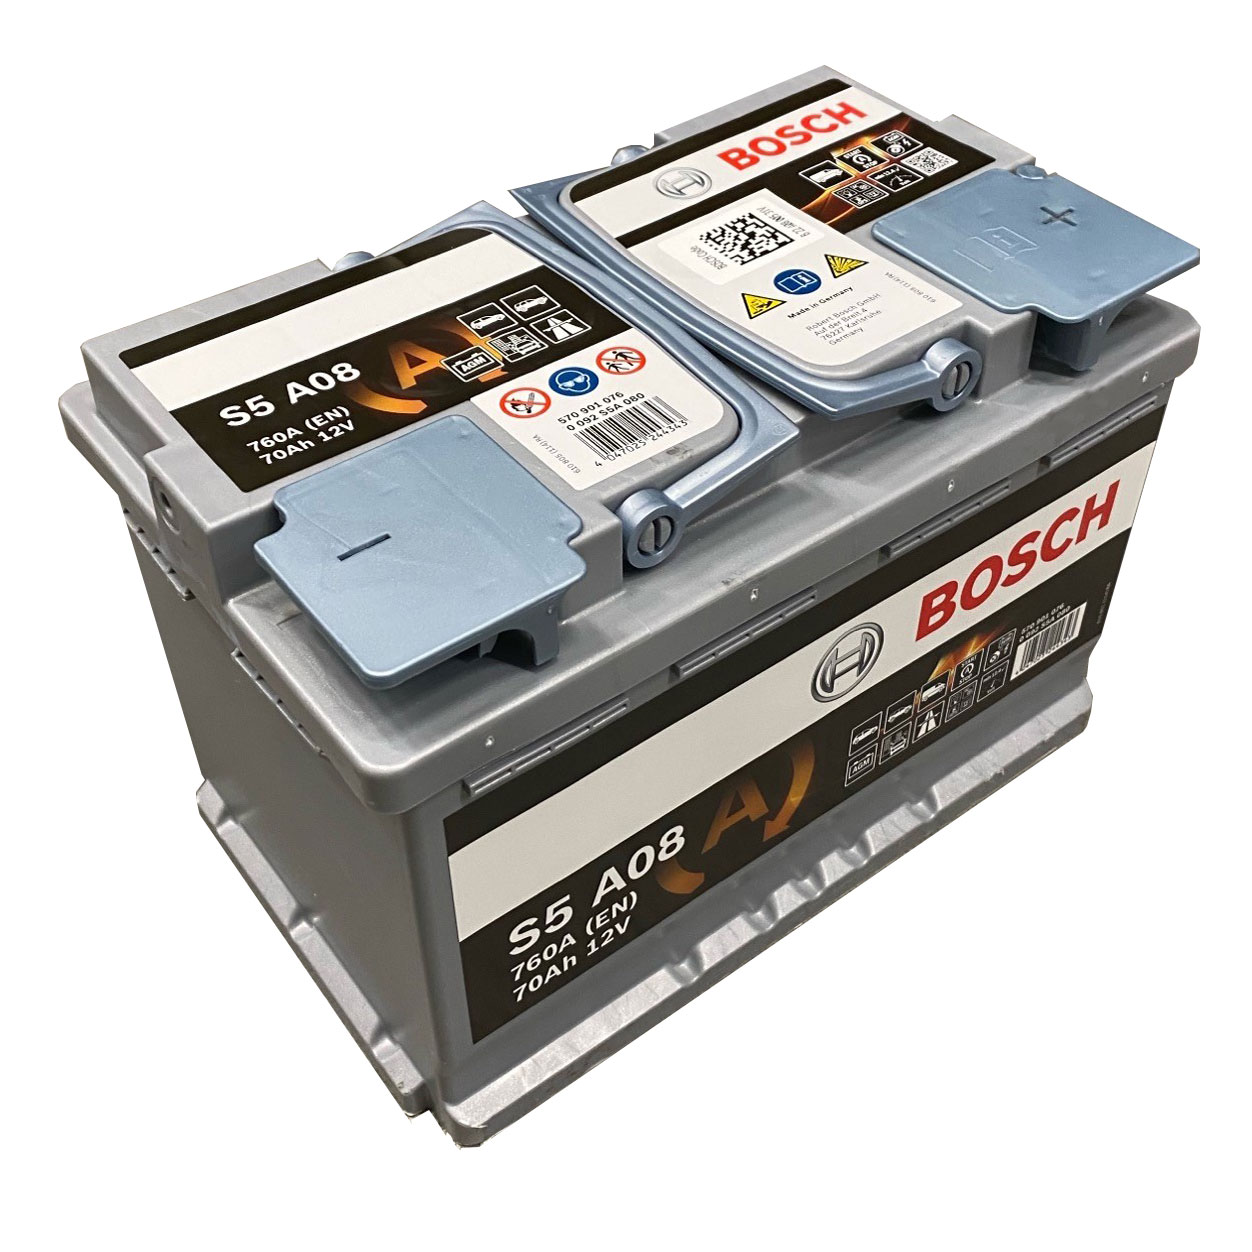 Battery Bosch 12V 70Ah 760A(EN) R+ Start&Stop Bosch 0092S5A080